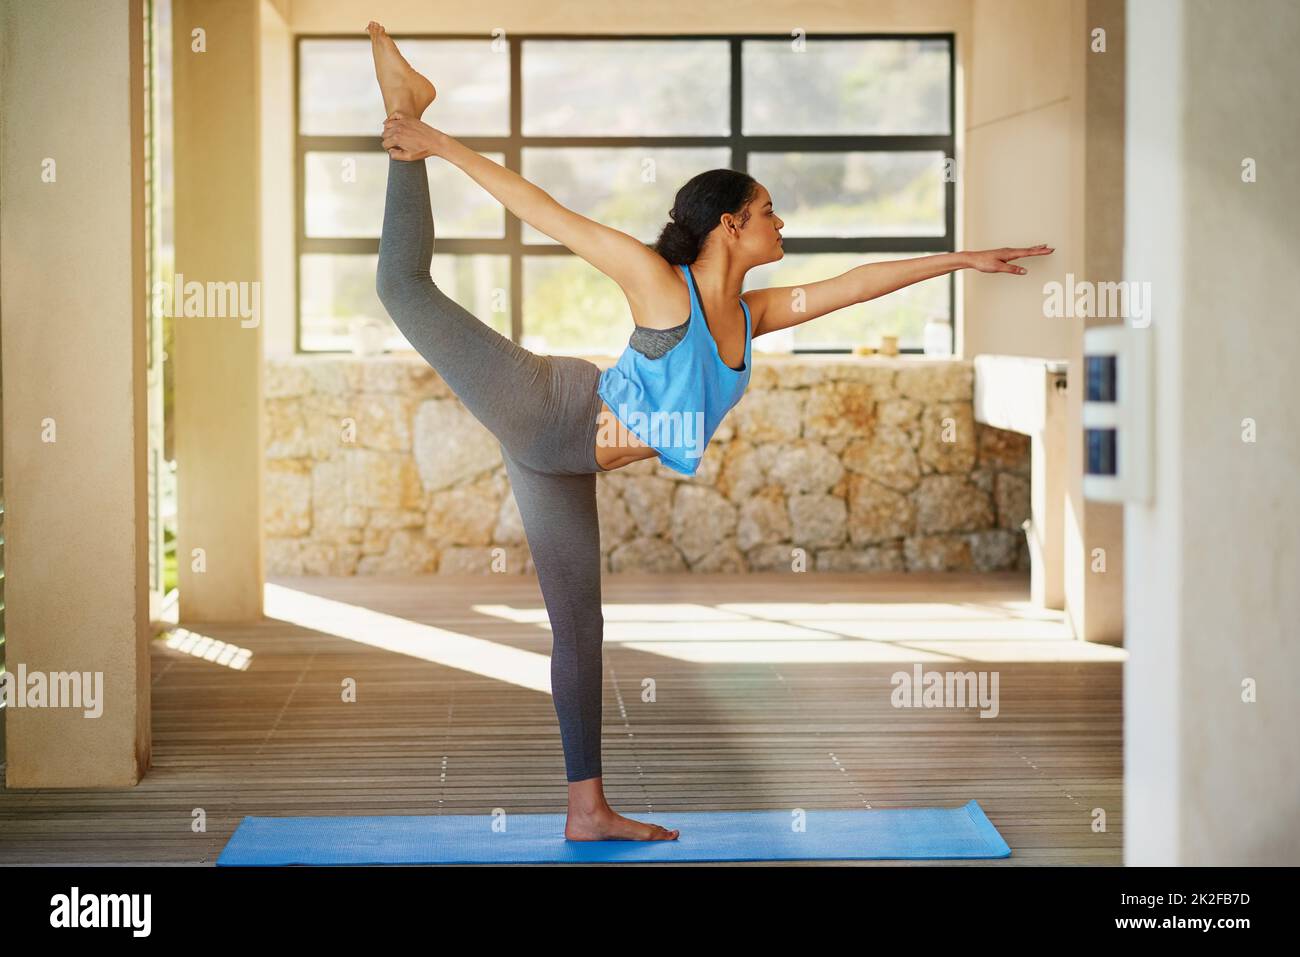 Der Aufstieg zu einem gesunden Lebensstil. Aufnahme einer jungen Frau, die zu Hause Yoga praktiziert. Stockfoto